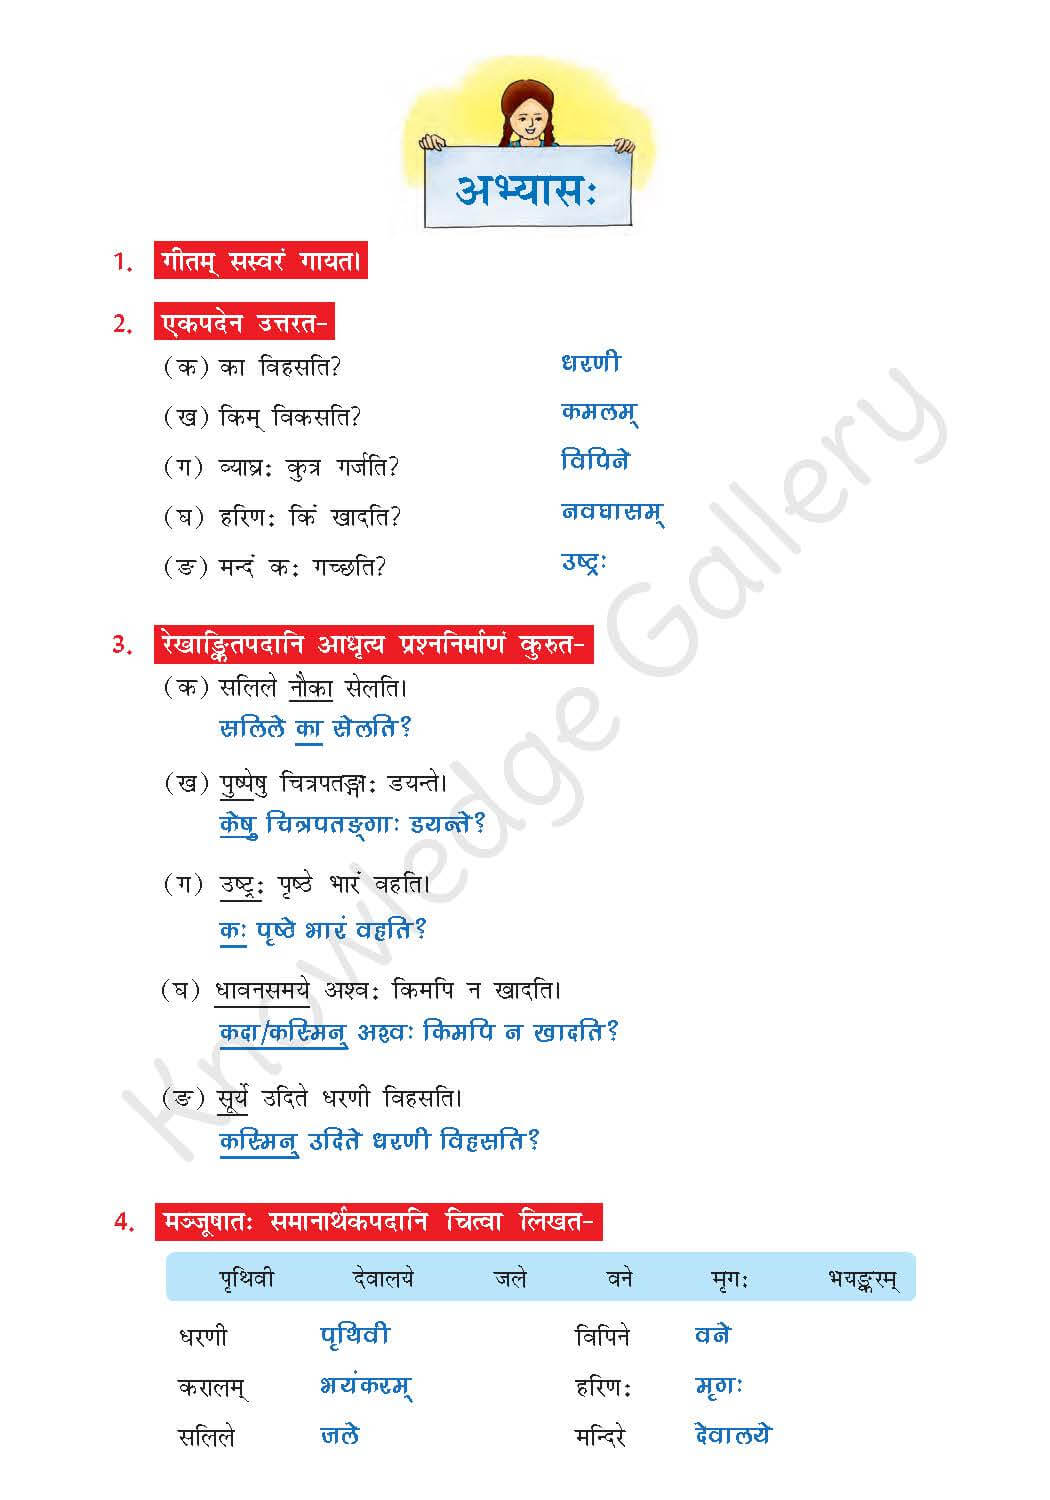 NCERT Solution For Class 7 Sanskrit Chapter 13 part 4